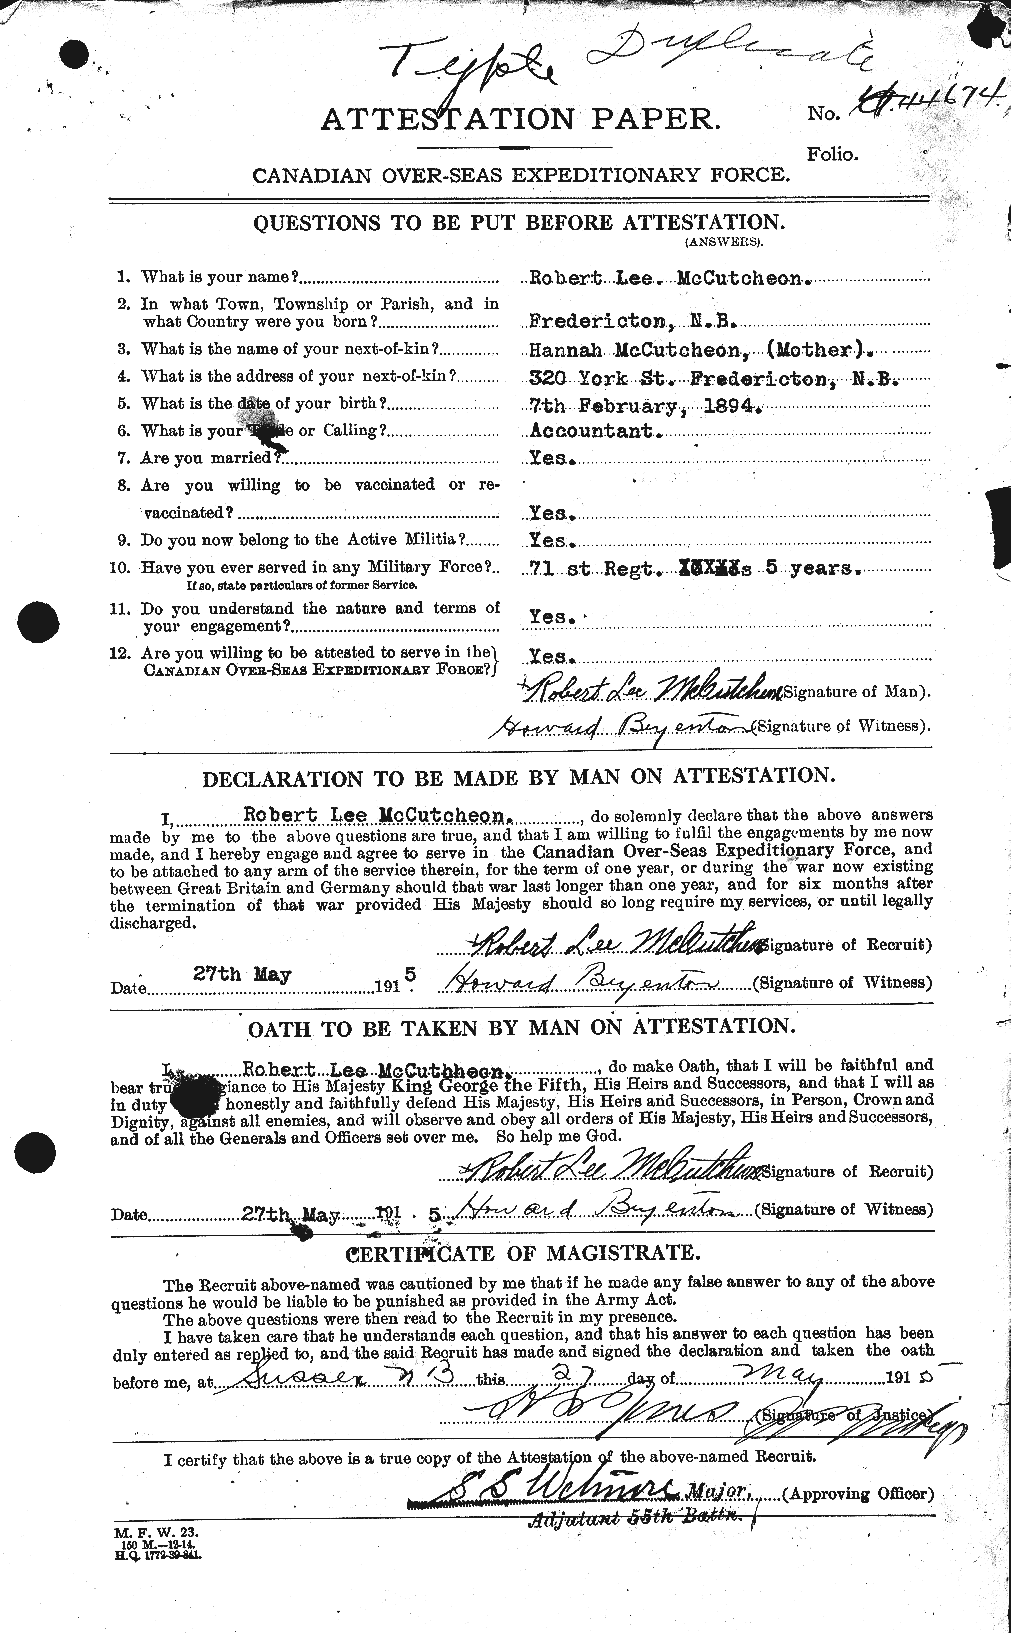 Dossiers du Personnel de la Première Guerre mondiale - CEC 136753a